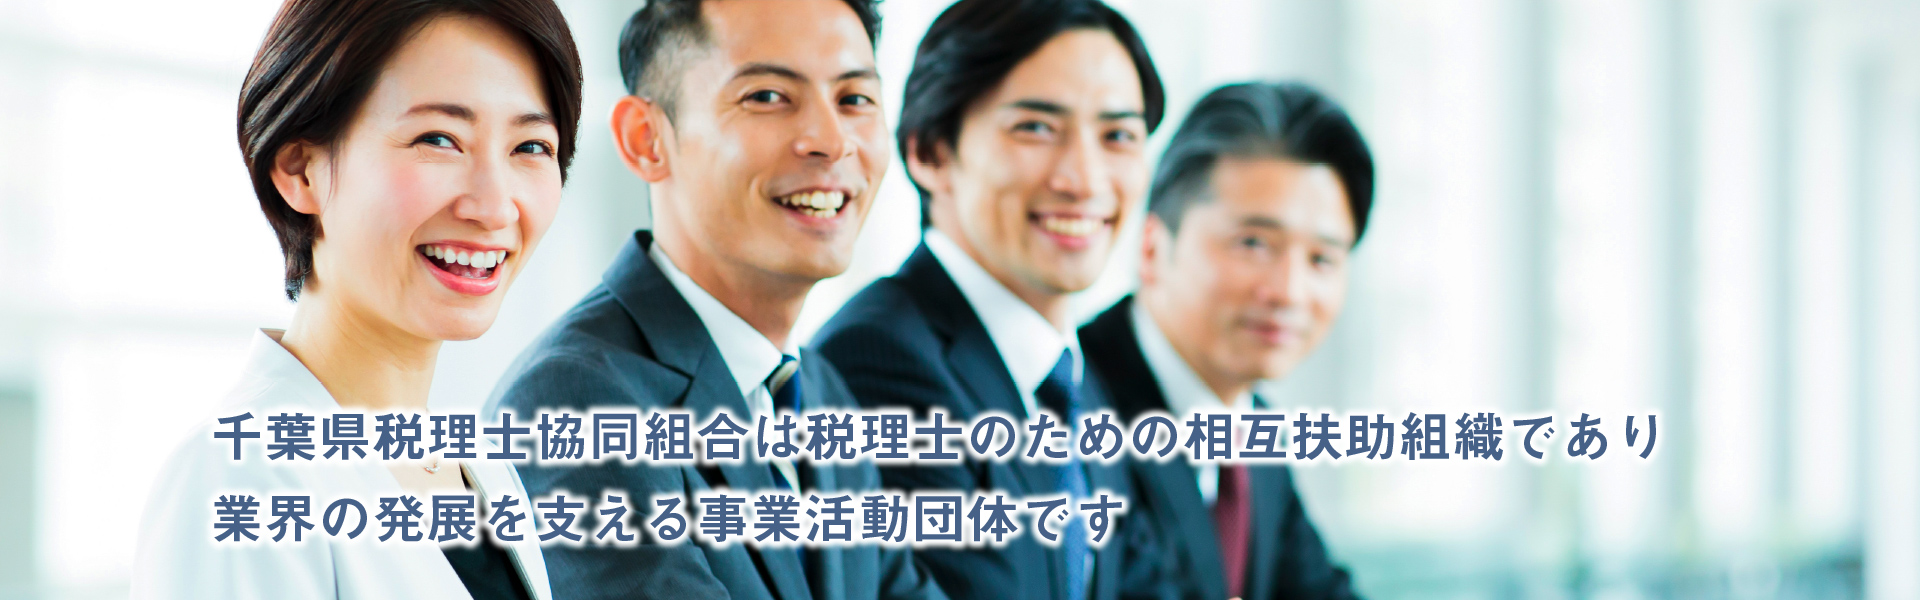 千葉県税理士協同組合は税理士のための相互扶助組織であり業界の発展を支える事業活動団体です